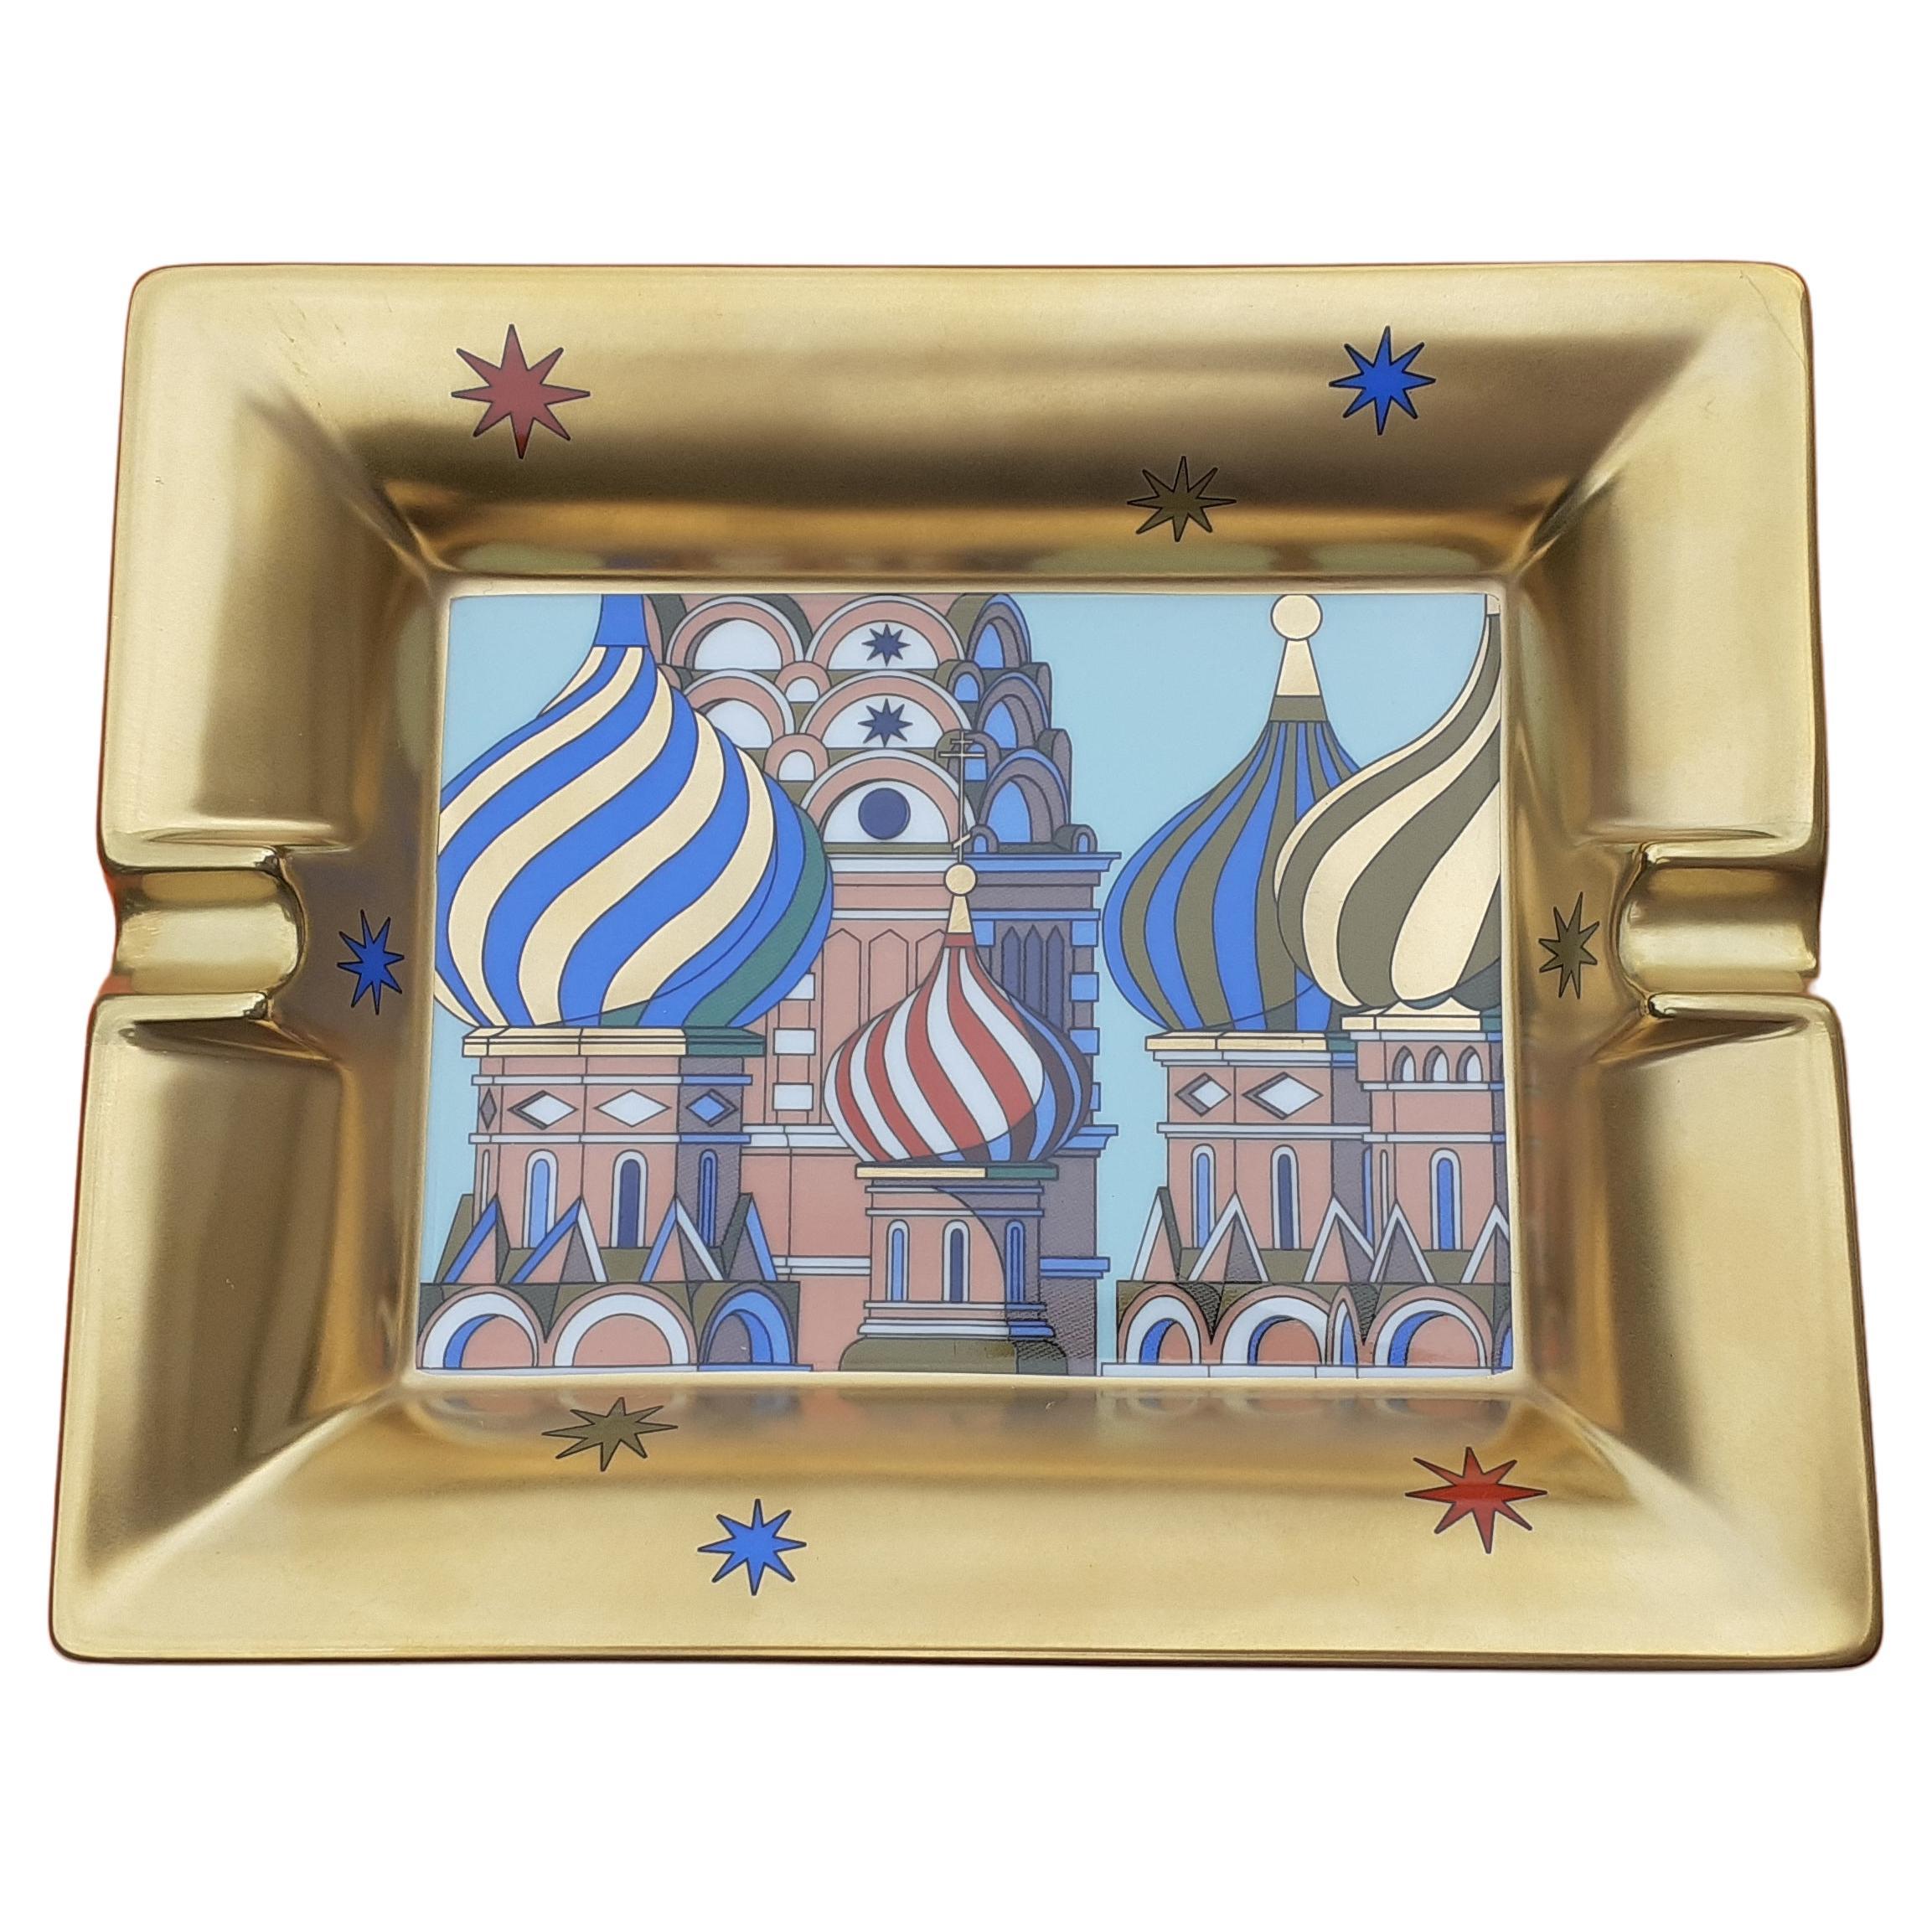 Wunderschöner und seltener authentischer Hermès Aschenbecher

Drucken: Kathedrale des Heiligen Basilius des Seligen in Moskau

Muster: Russische Dächer

Aus der Sammlung 